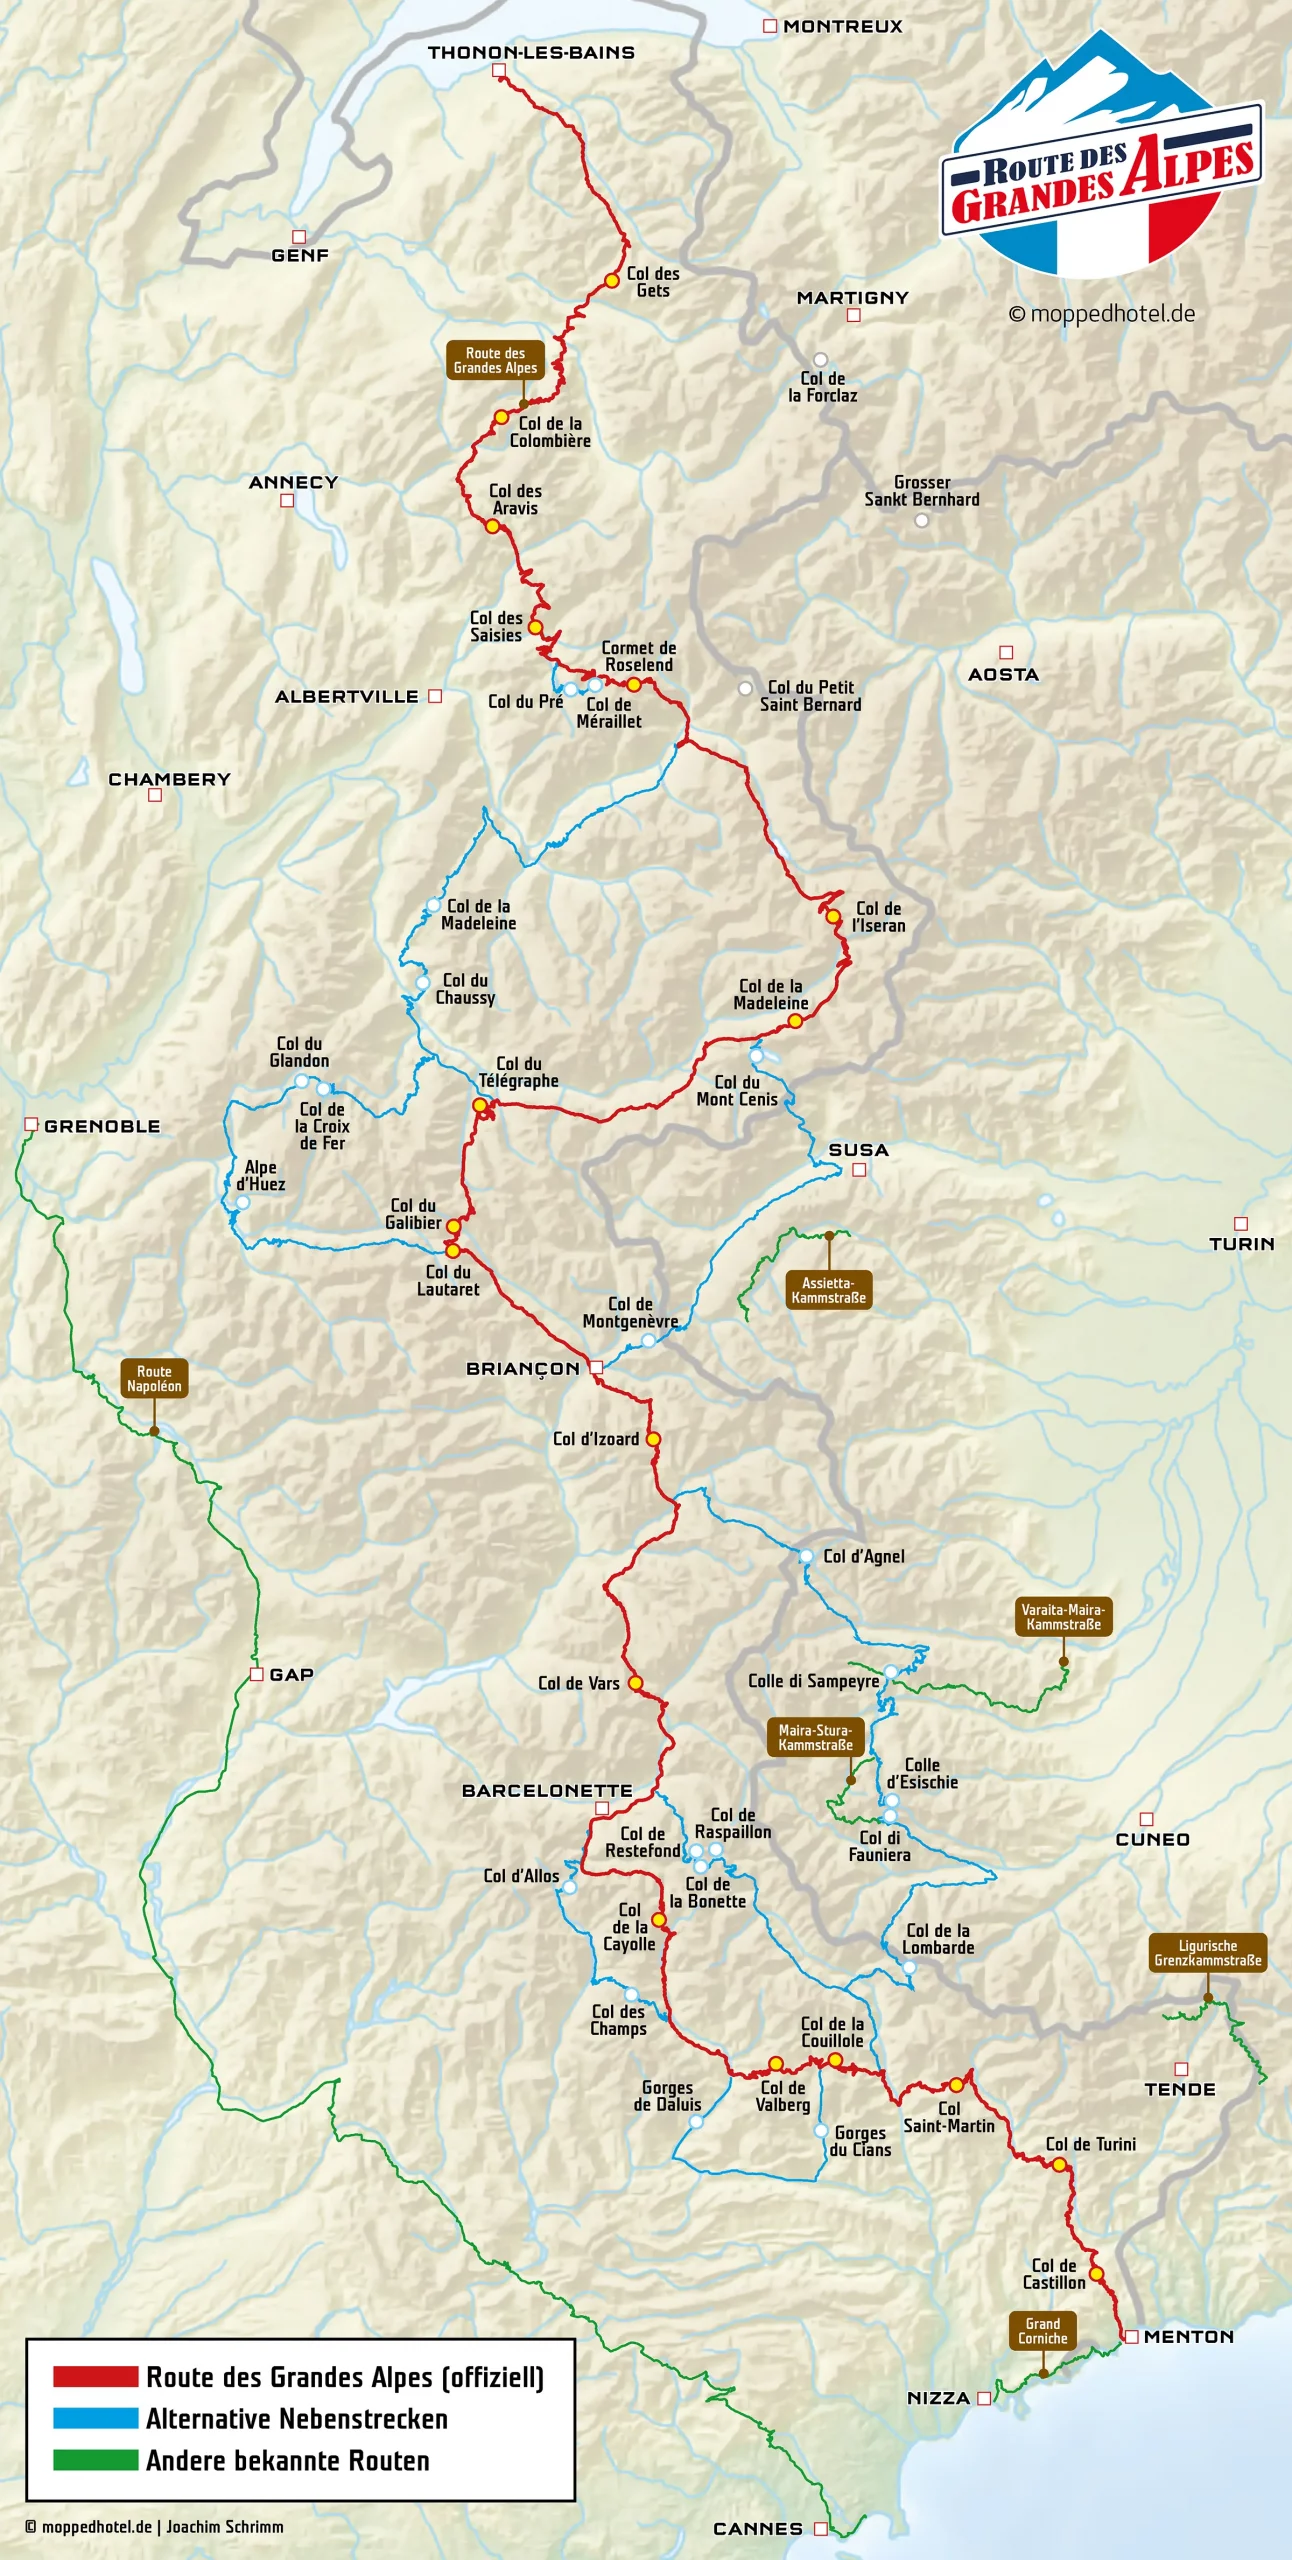 Karte der Route des Grandes Alpes mit alternativen Nebenstrecken